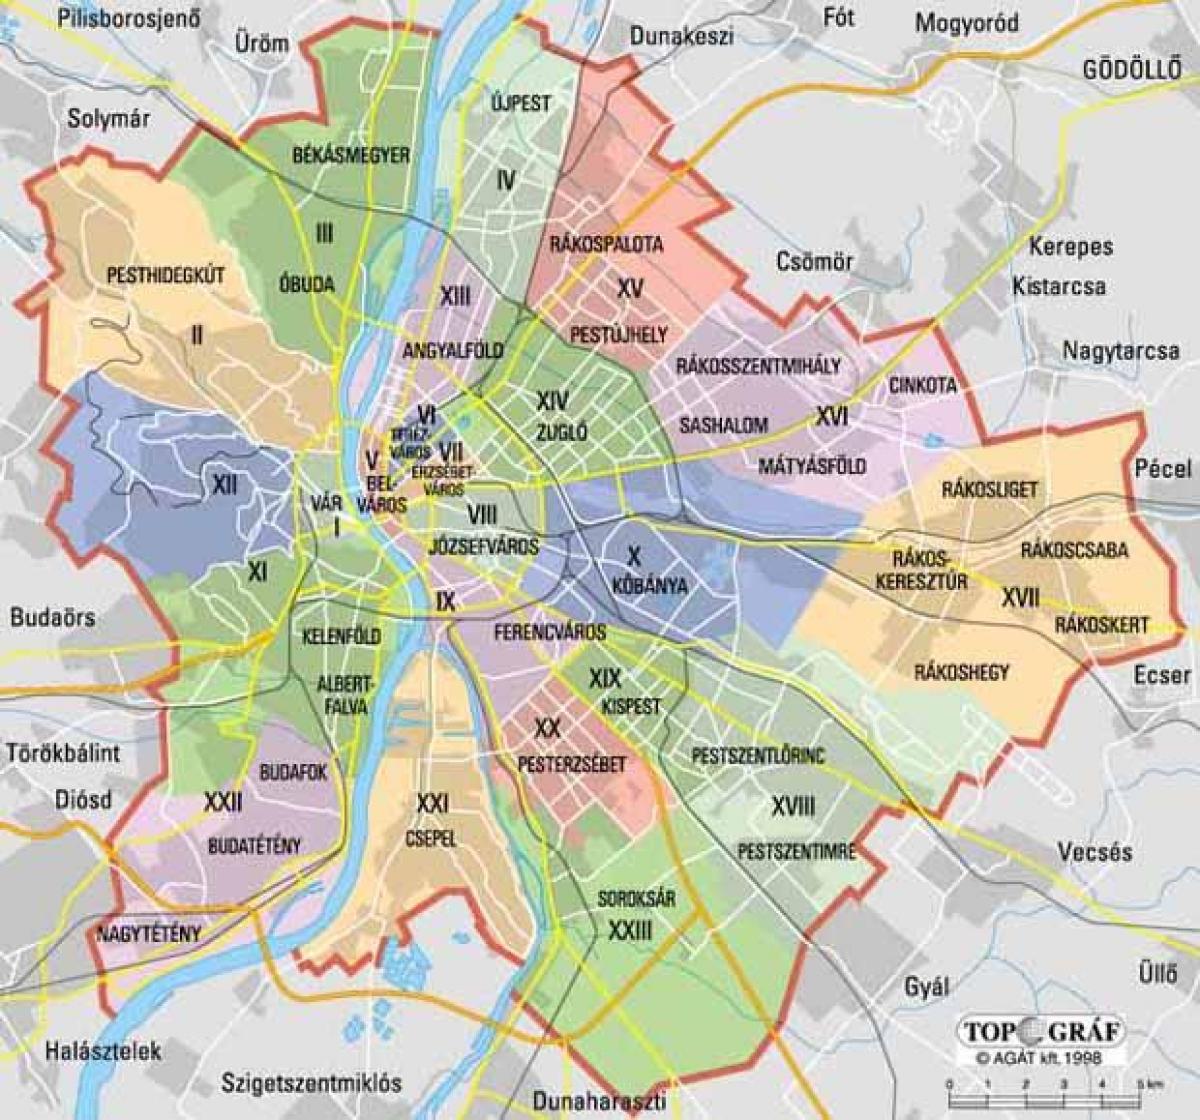 Mapa del distrito de Budapest